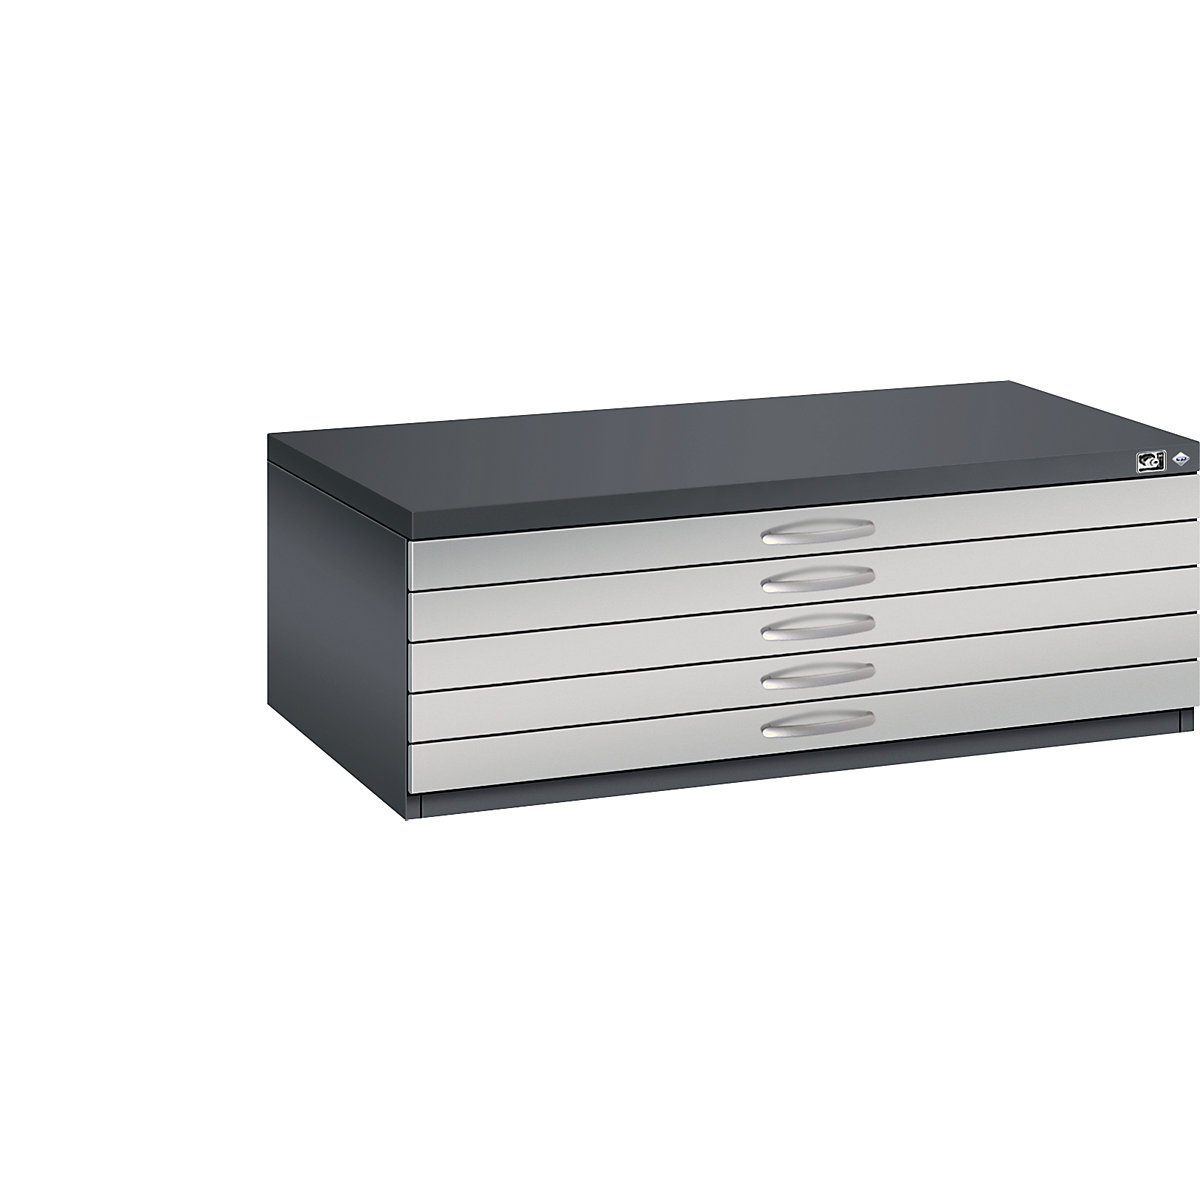 C+P Zeichnungsschrank, DIN A1, 5 Schubladen, Höhe 420 mm, schwarzgrau / weißaluminium